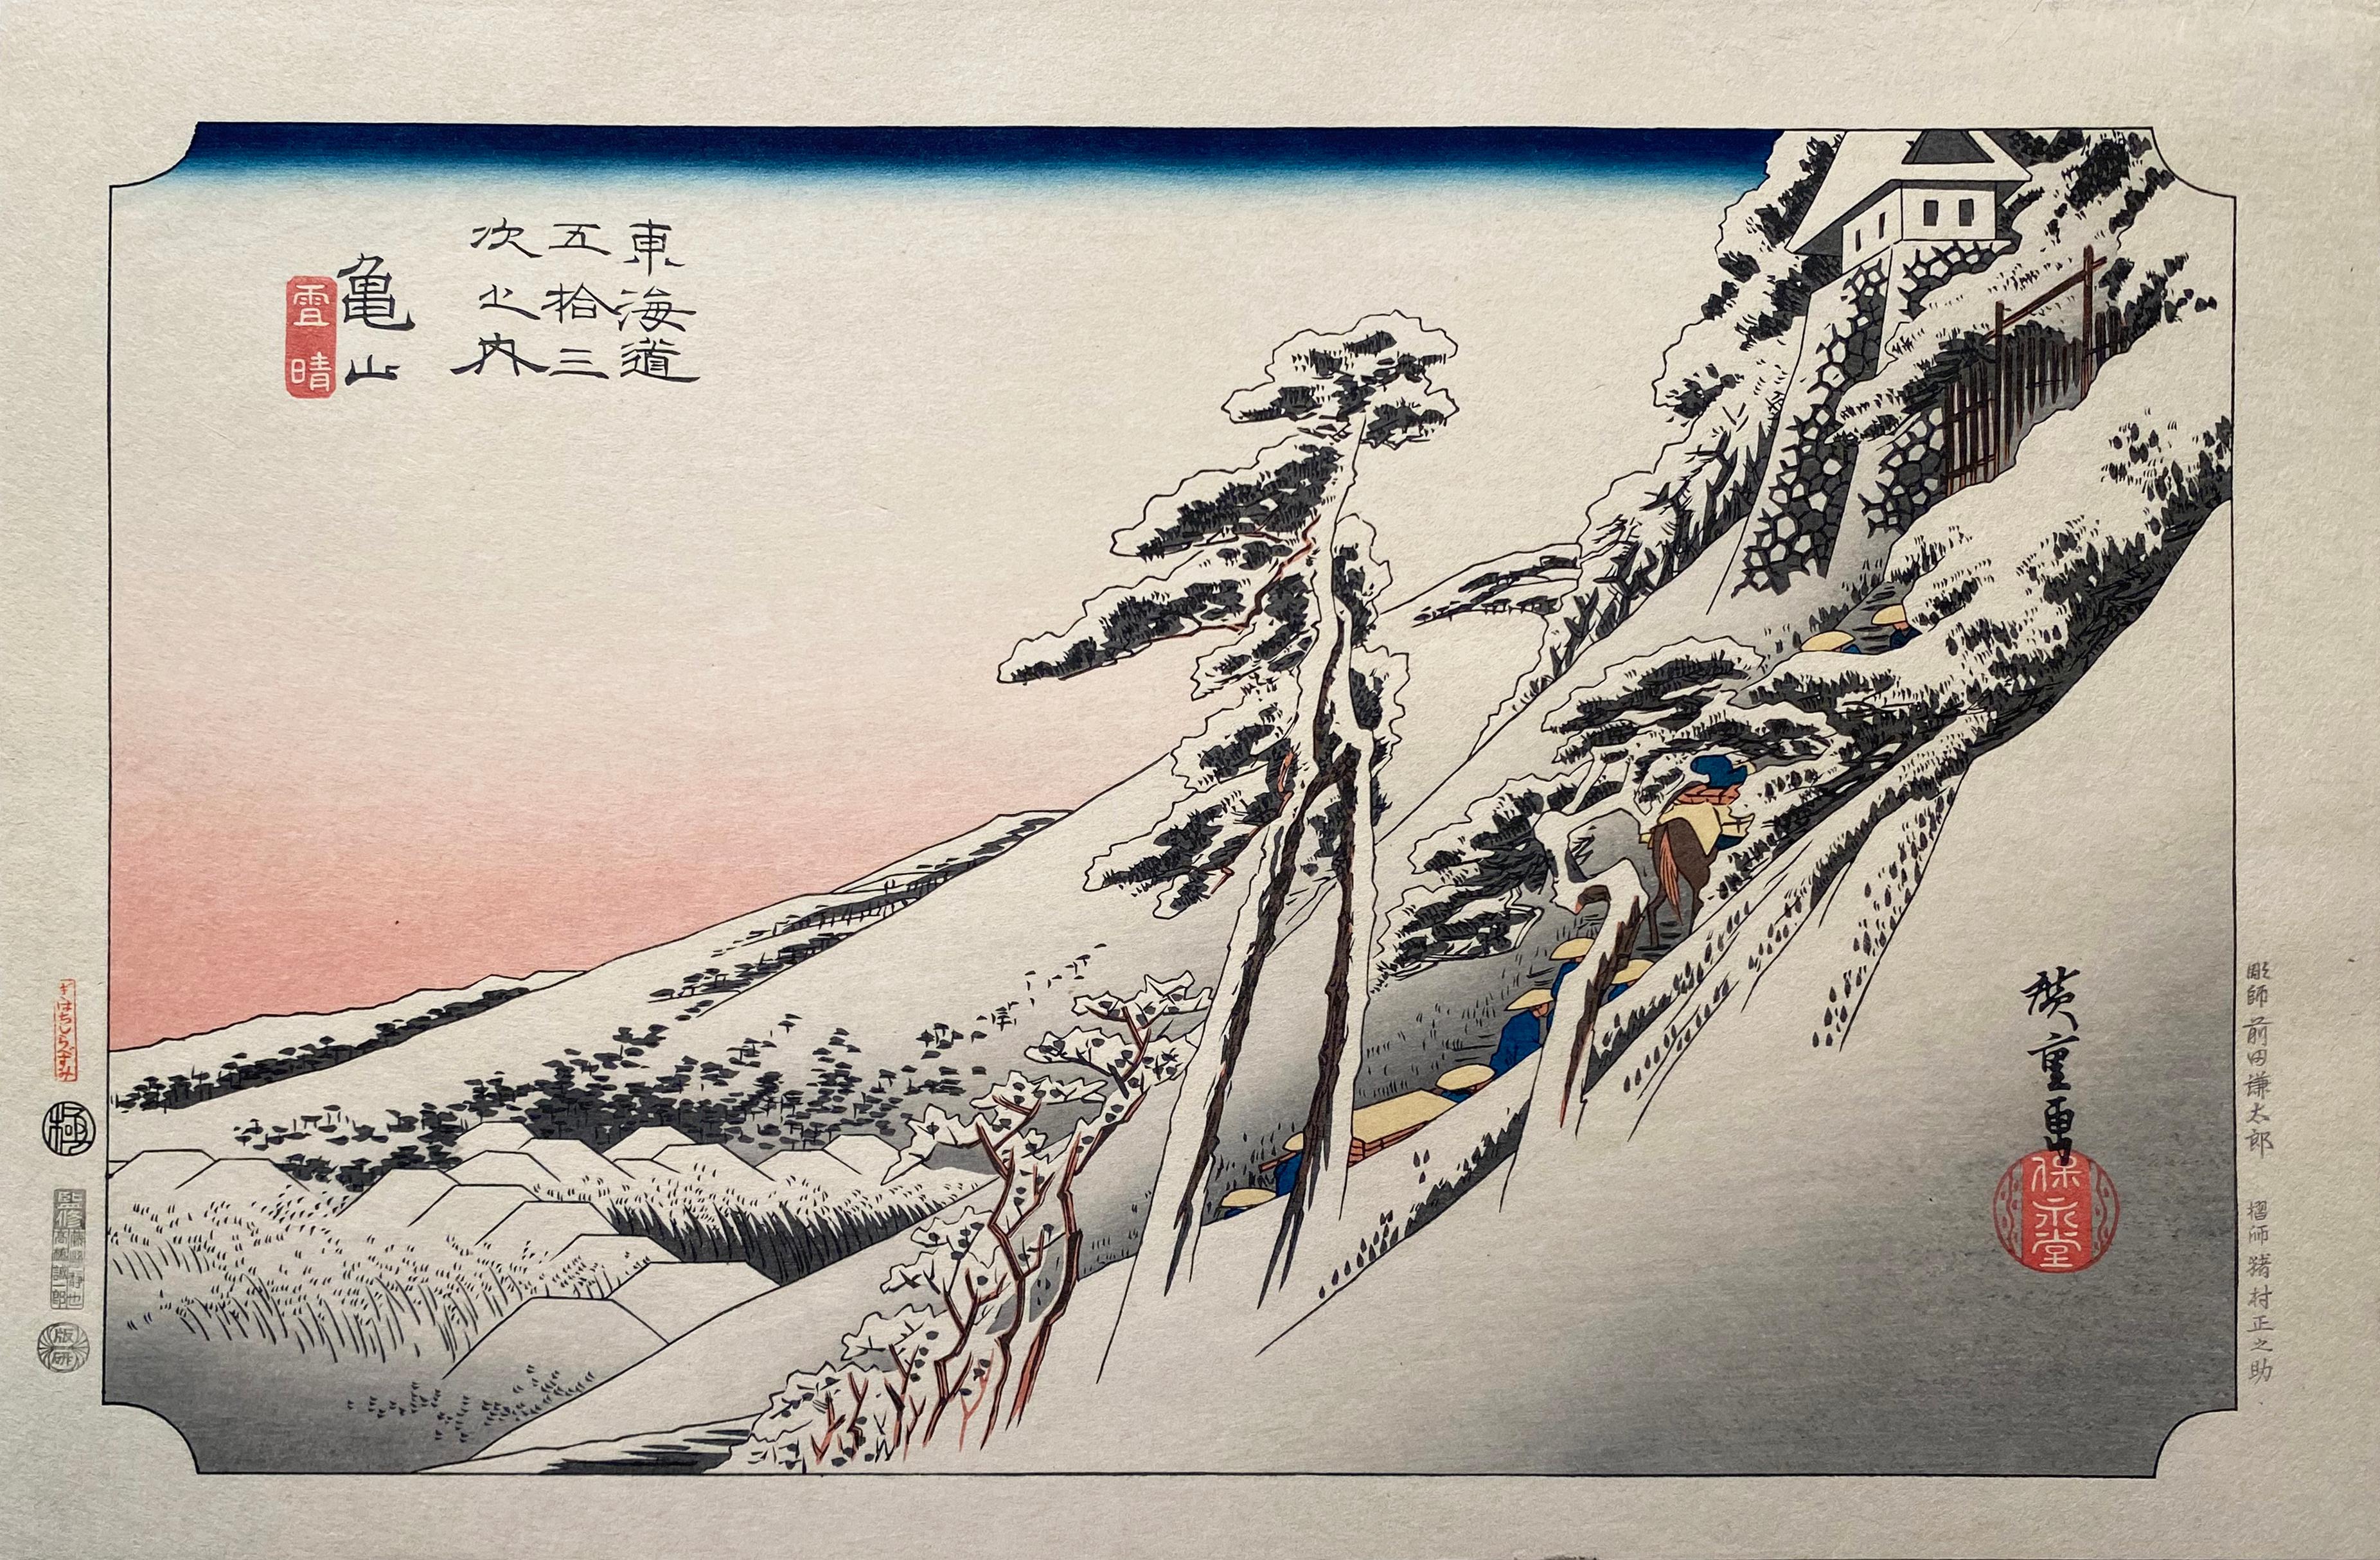 'View of Kameyama', After Utagawa Hiroshige 歌川廣重, Ukiyo-e Woodblock, Tokaido